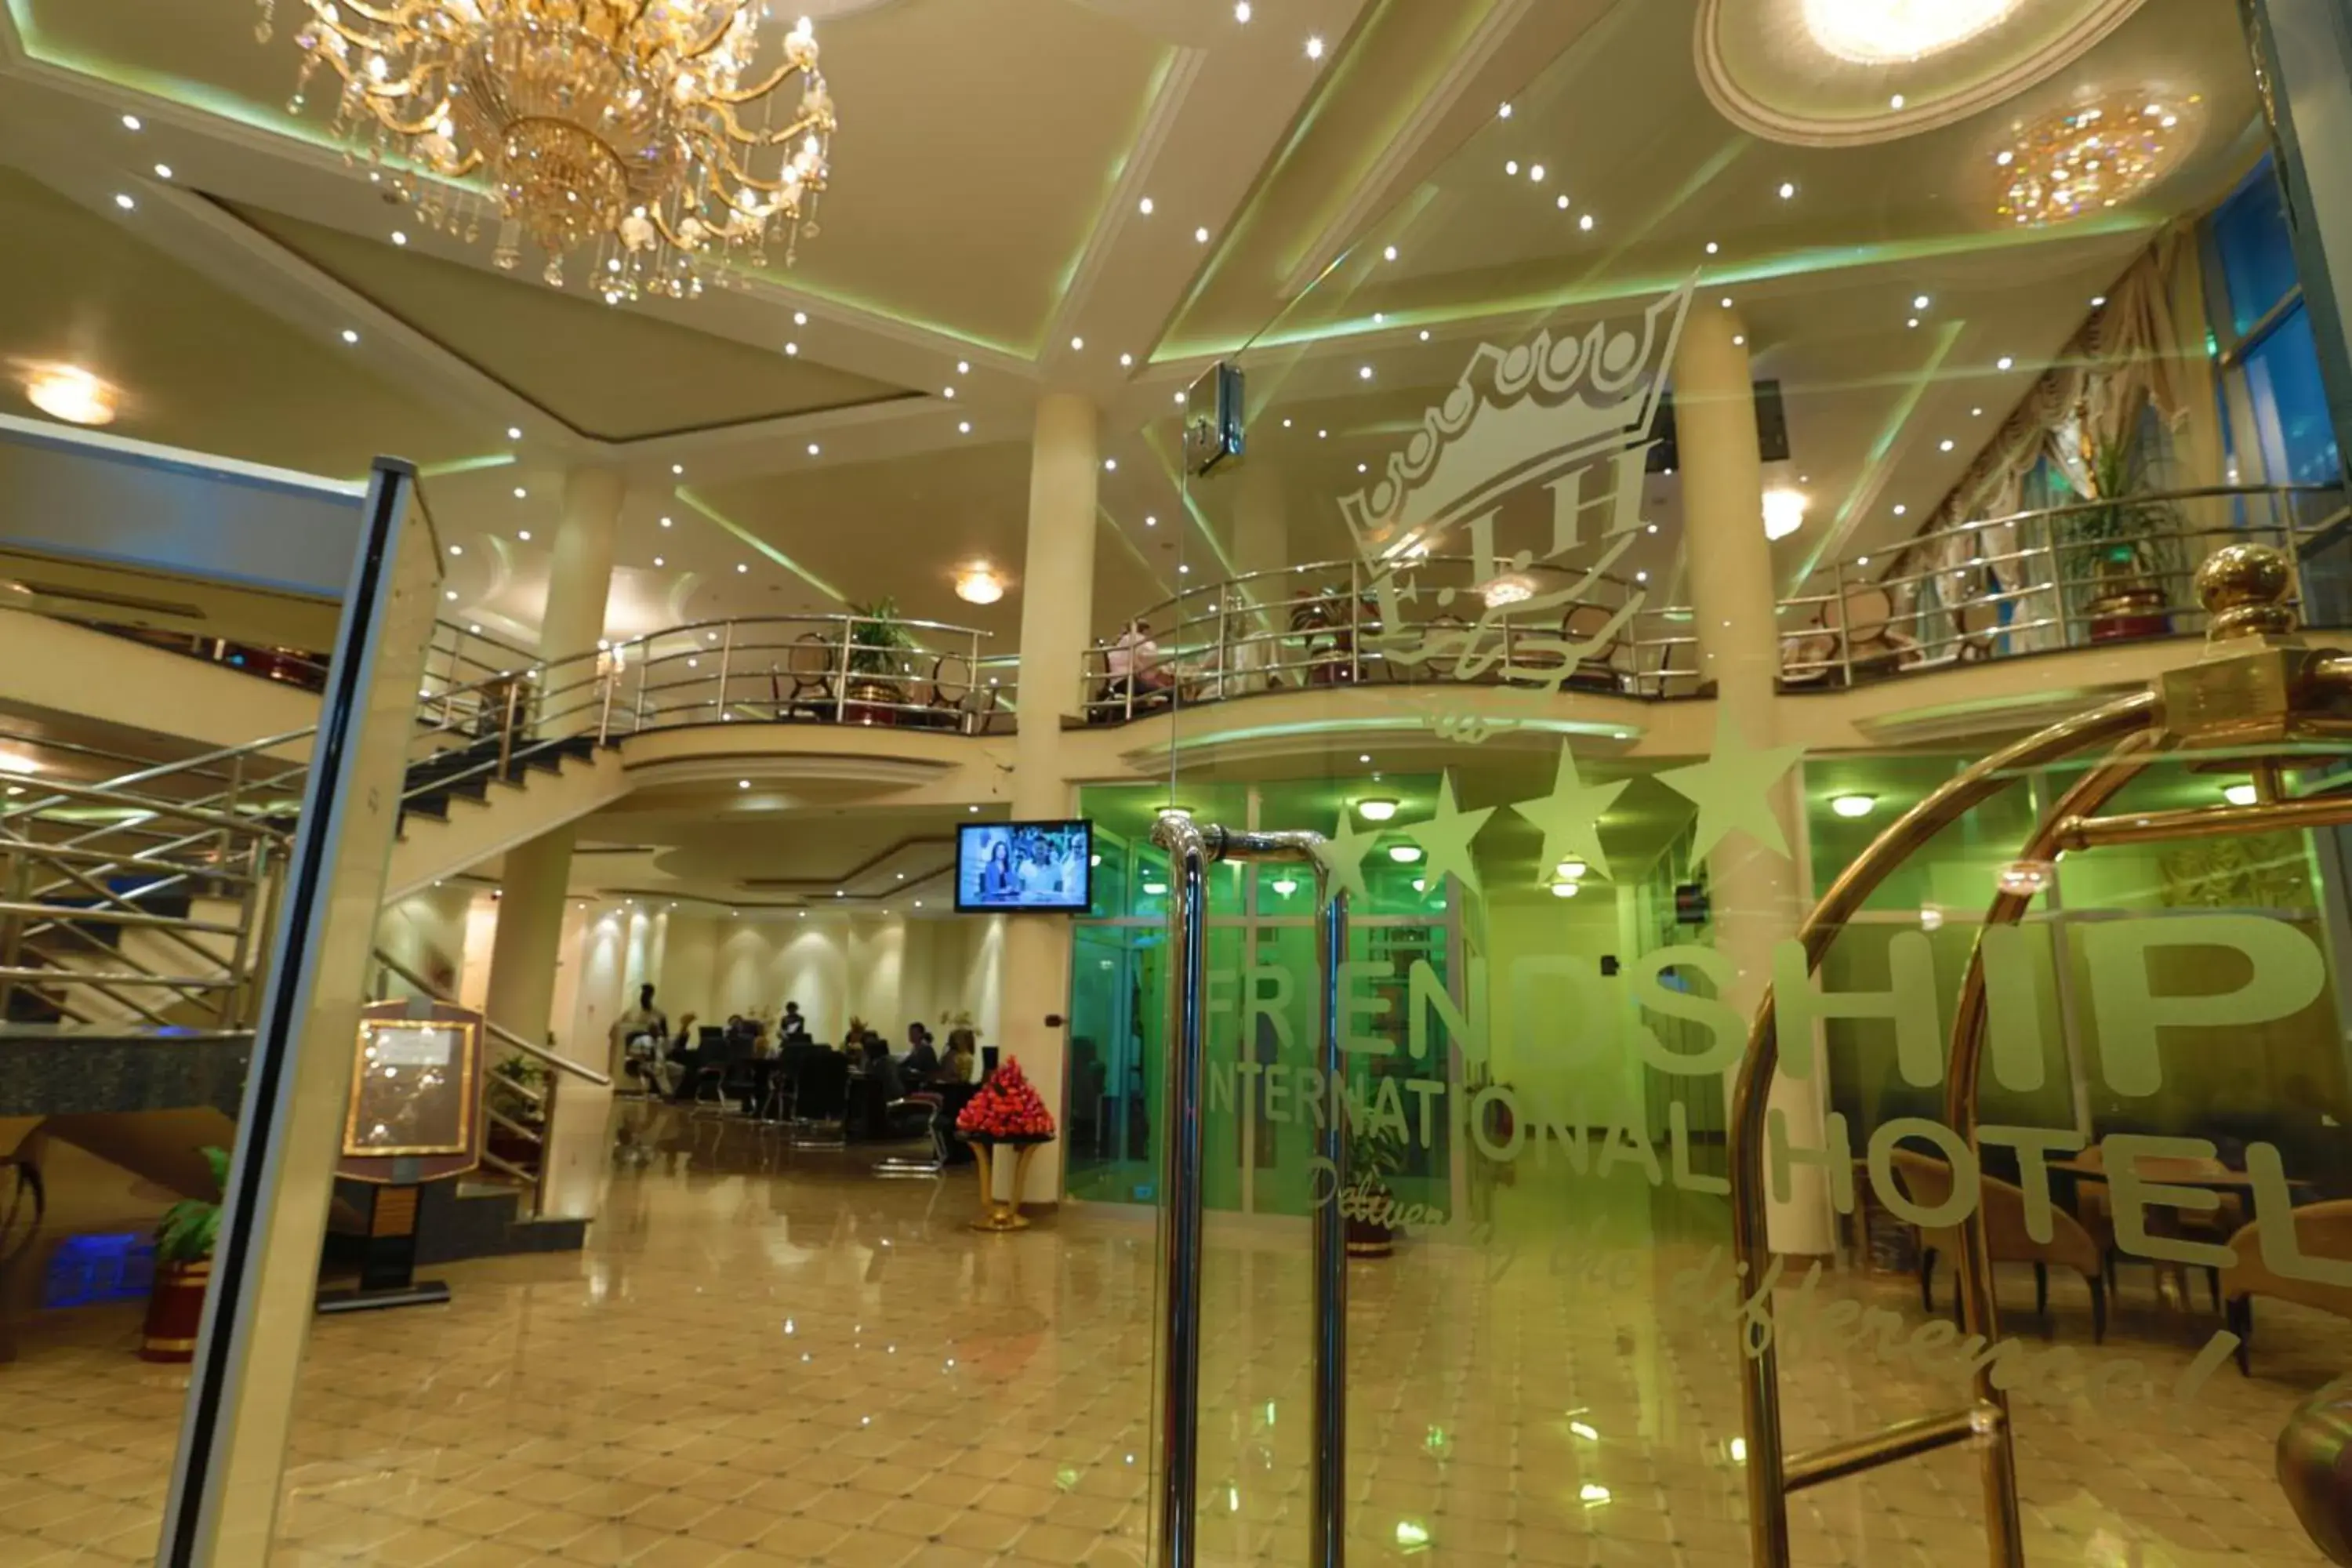 Lobby or reception in Friendship International Hotel